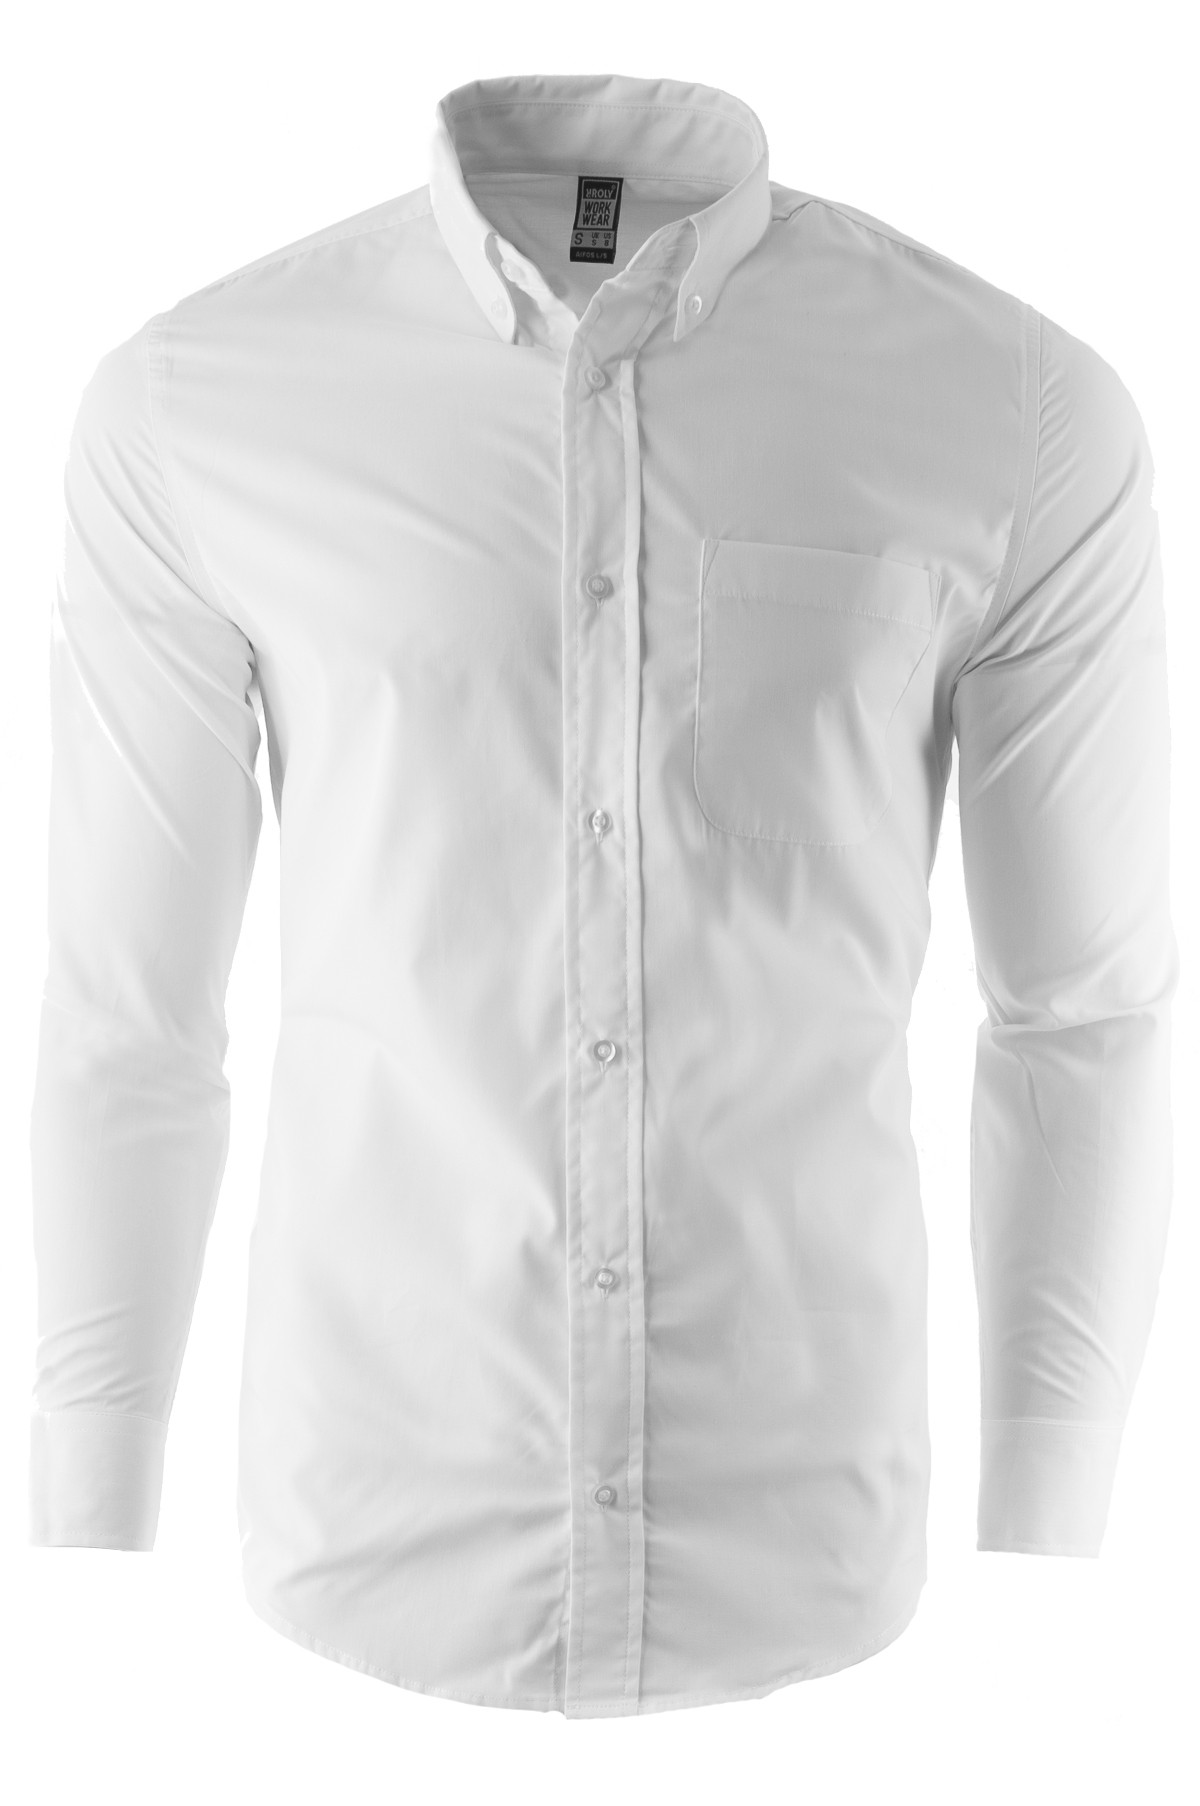 Koszula męska z długim rękawem 5504 - biała